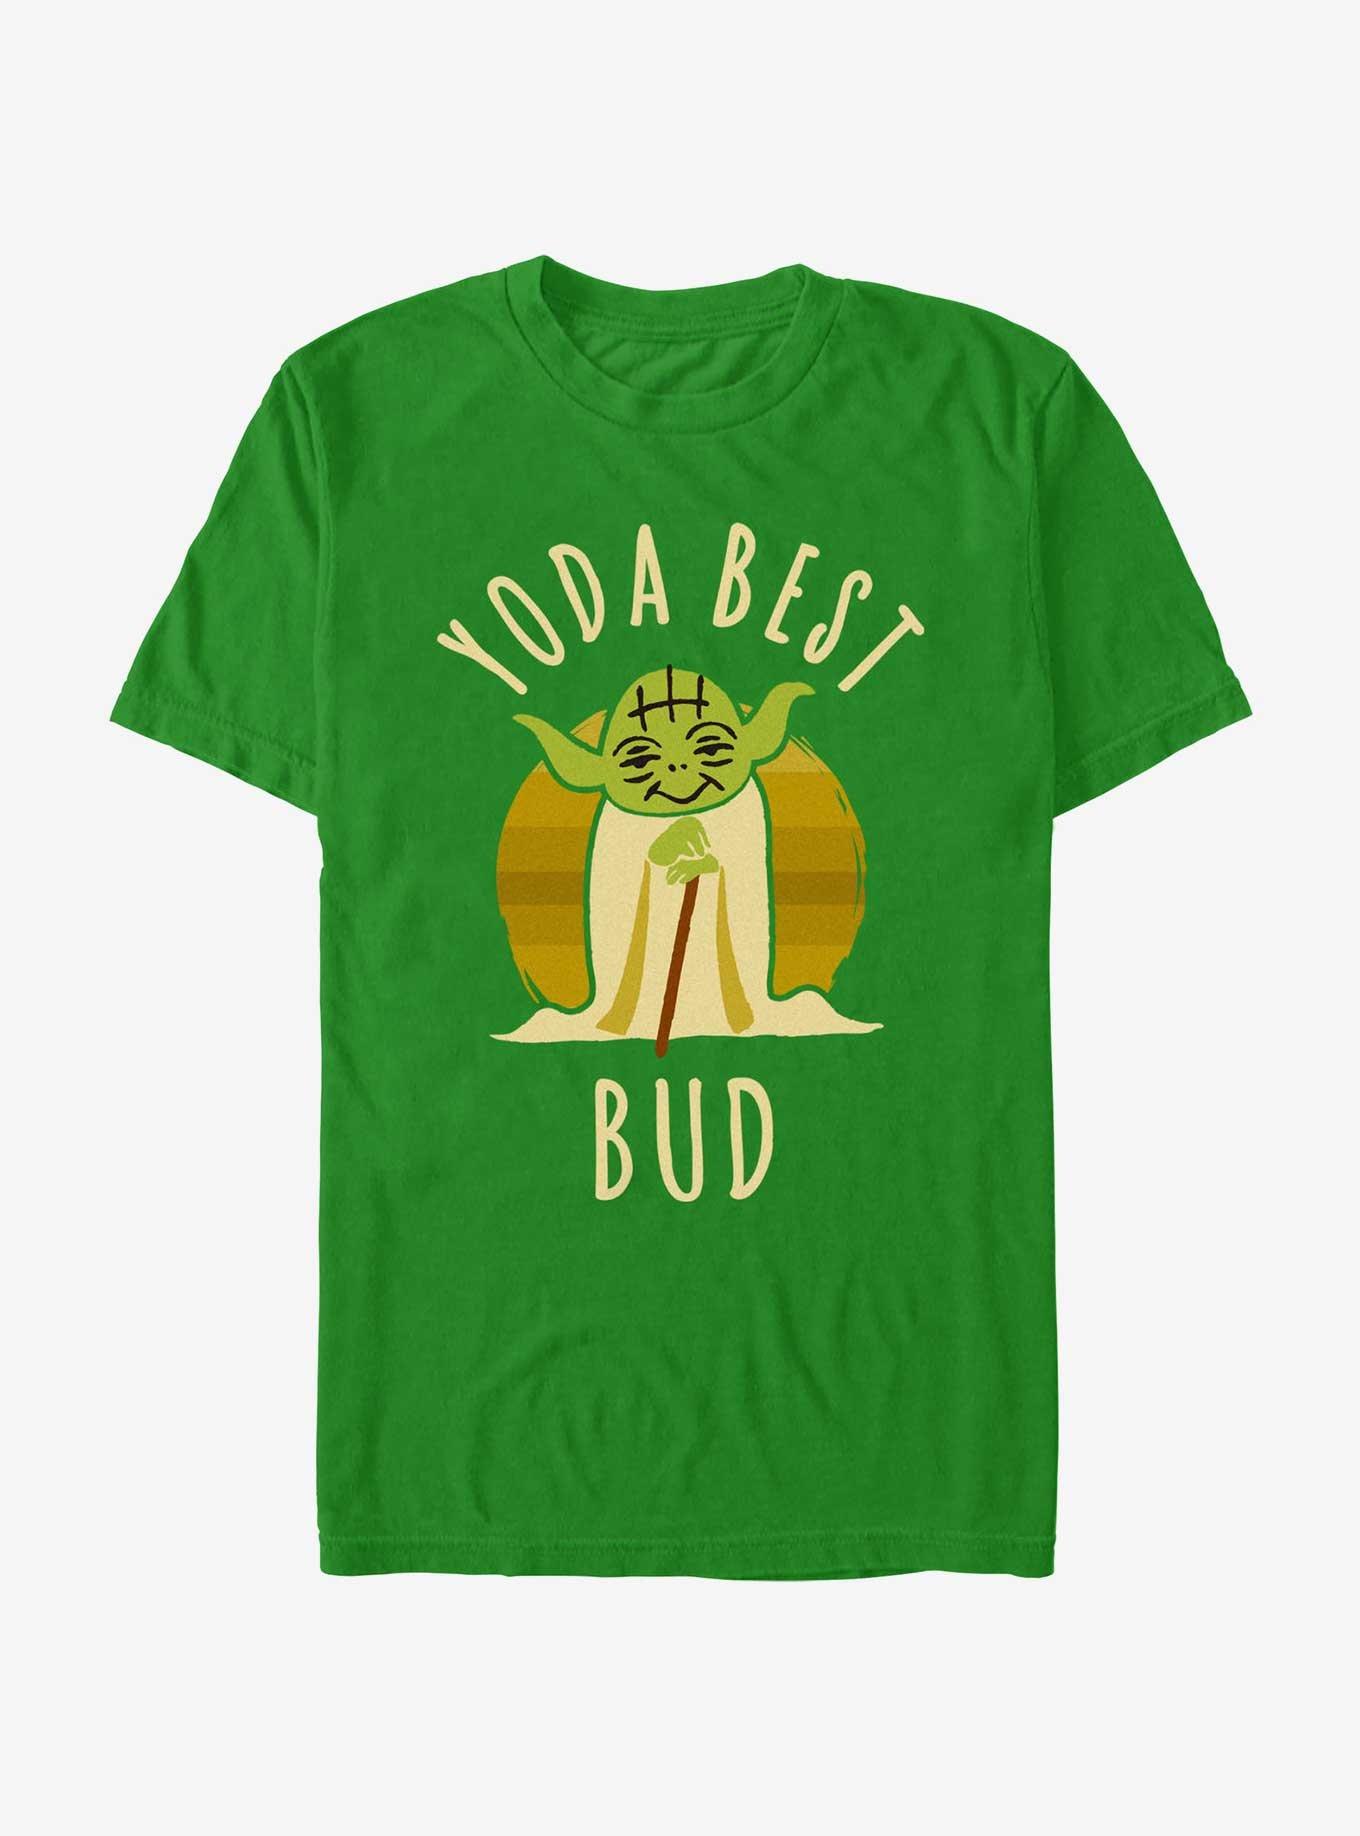 Star Wars Yoda Best Bud T-Shirt, KELLY, hi-res